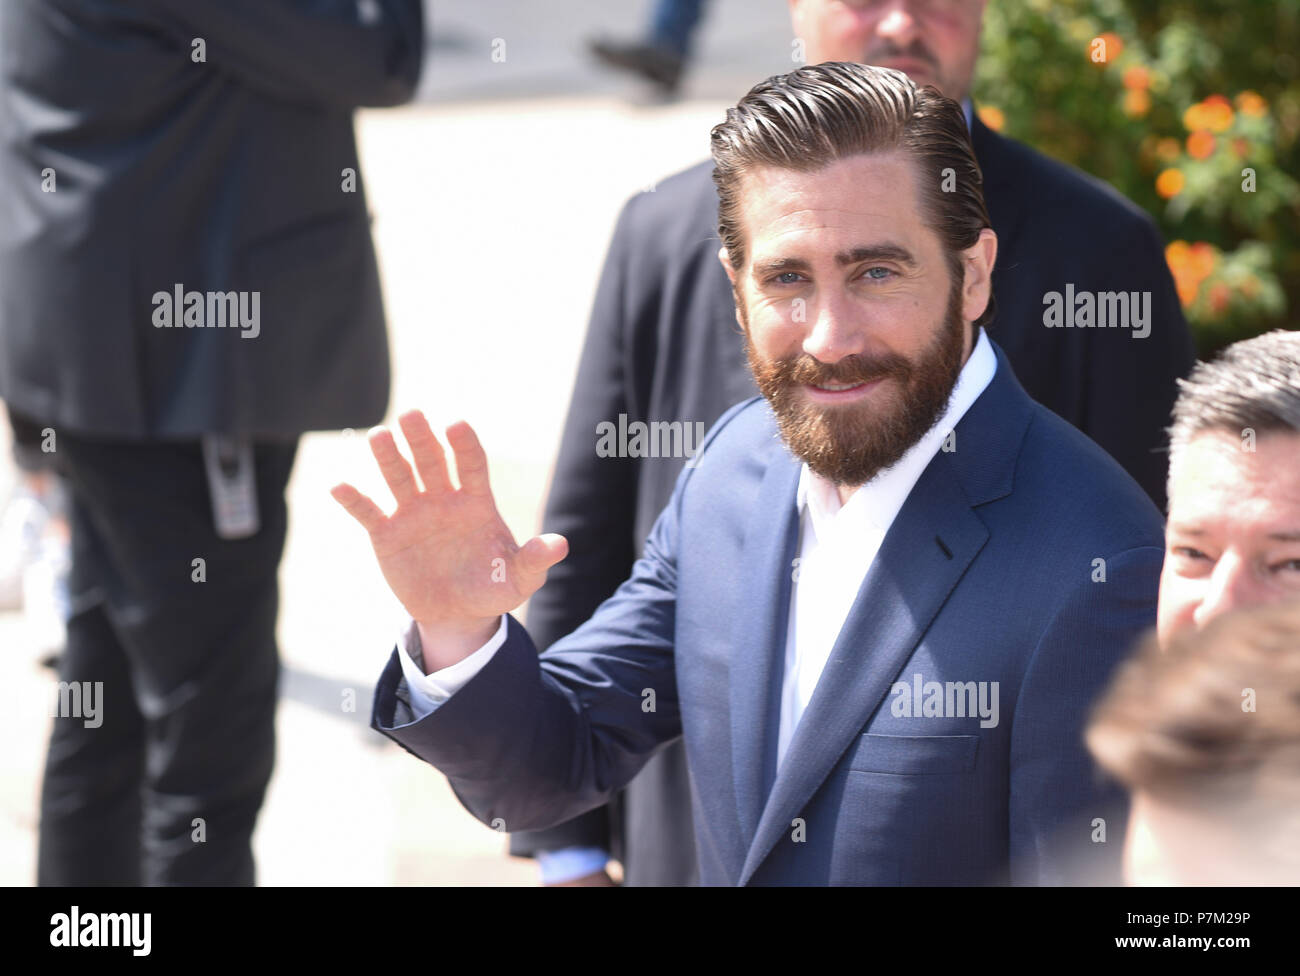 Mai 19, 2017 - Cannes, Frankreich: Jake Gyllenhaal besucht die 'Okja" fotoshooting während des 70. Filmfestival in Cannes. Jake Gyllenhaal lors du 70eme Festival de Cannes. *** Frankreich/KEINE VERKÄUFE IN DEN FRANZÖSISCHEN MEDIEN *** Stockfoto